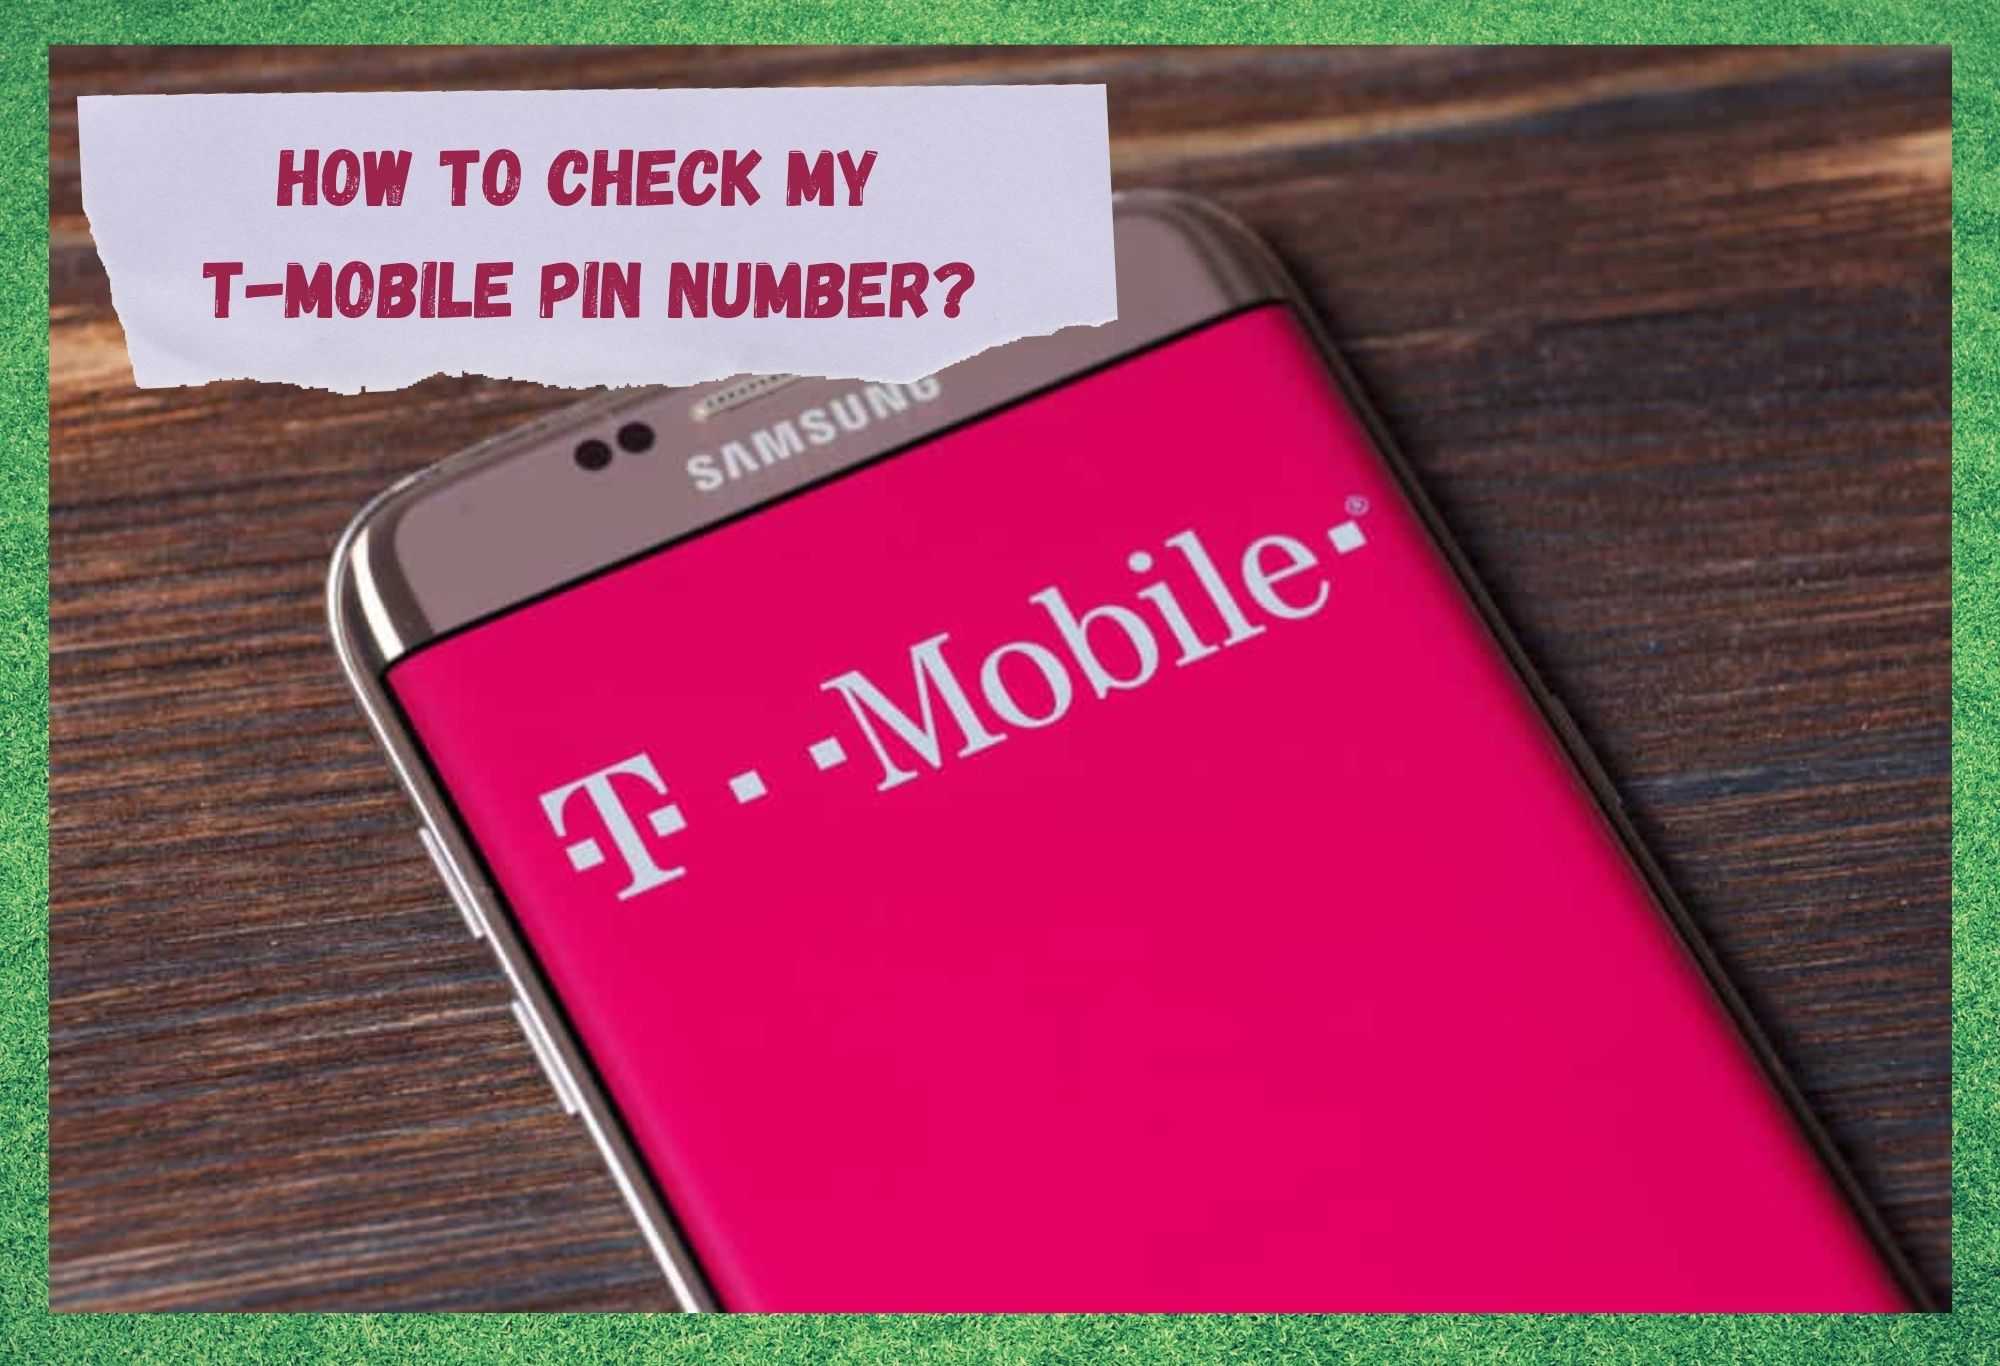 Hoe controleer ik mijn T-Mobile pincode? Uitgelegd